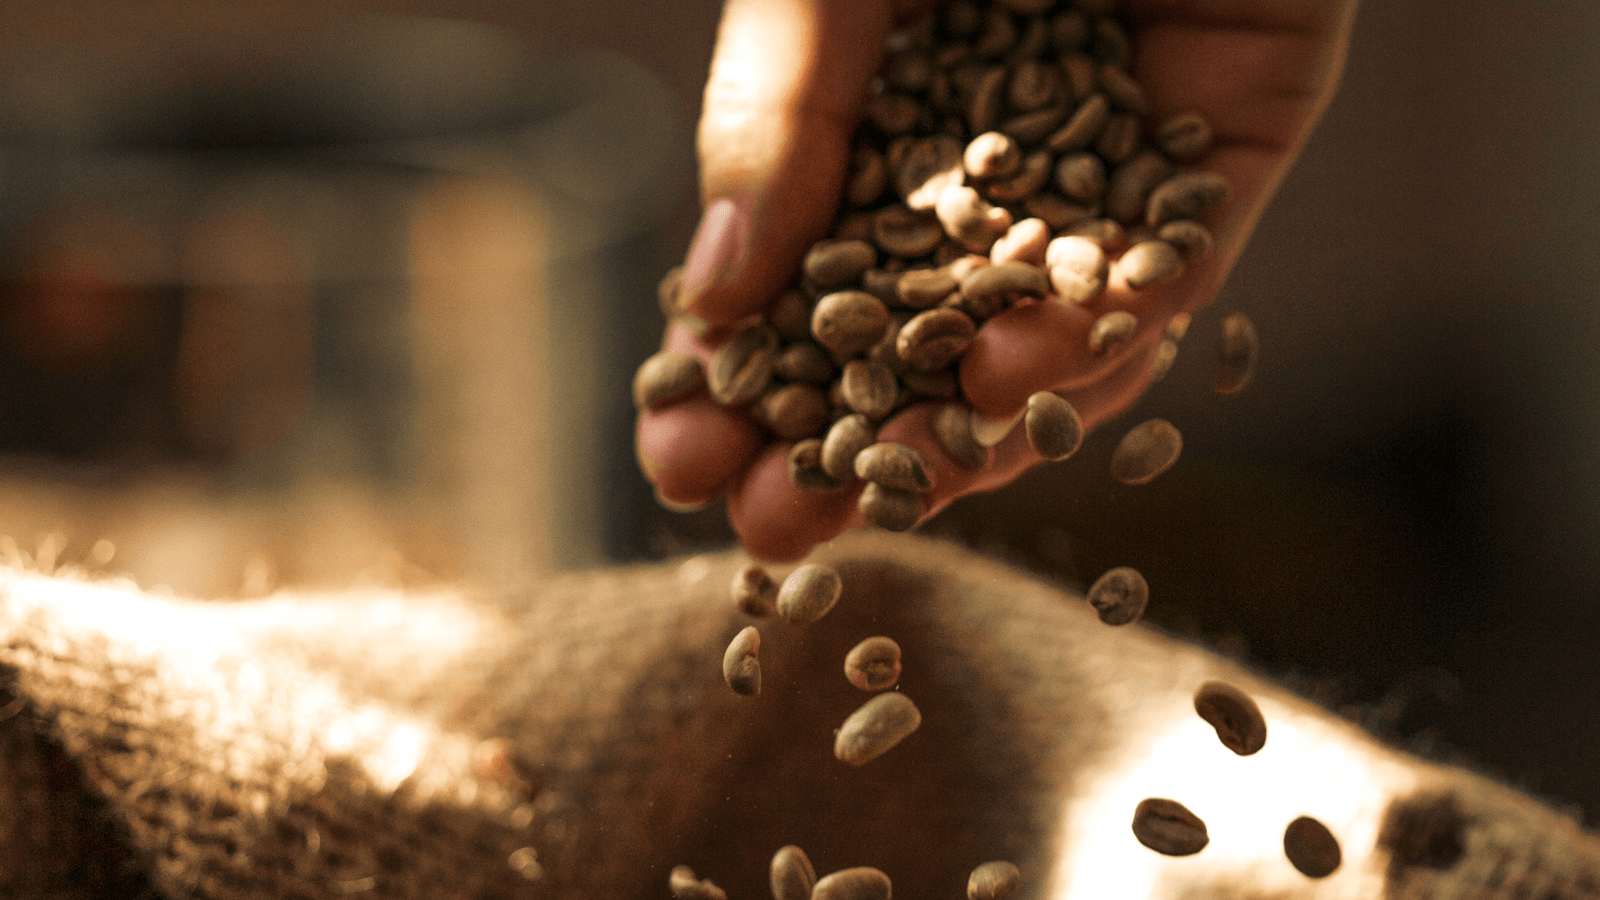 Xung quanh chuyện cà phê giảm cân, nhiều ý kiến cho rằng cà phê đen có nhiều biến thể khác nhau trong cách rang, xay, pha trộn nên hiệu quả giảm cân không bằng cà phê xanh nguyên chất. 